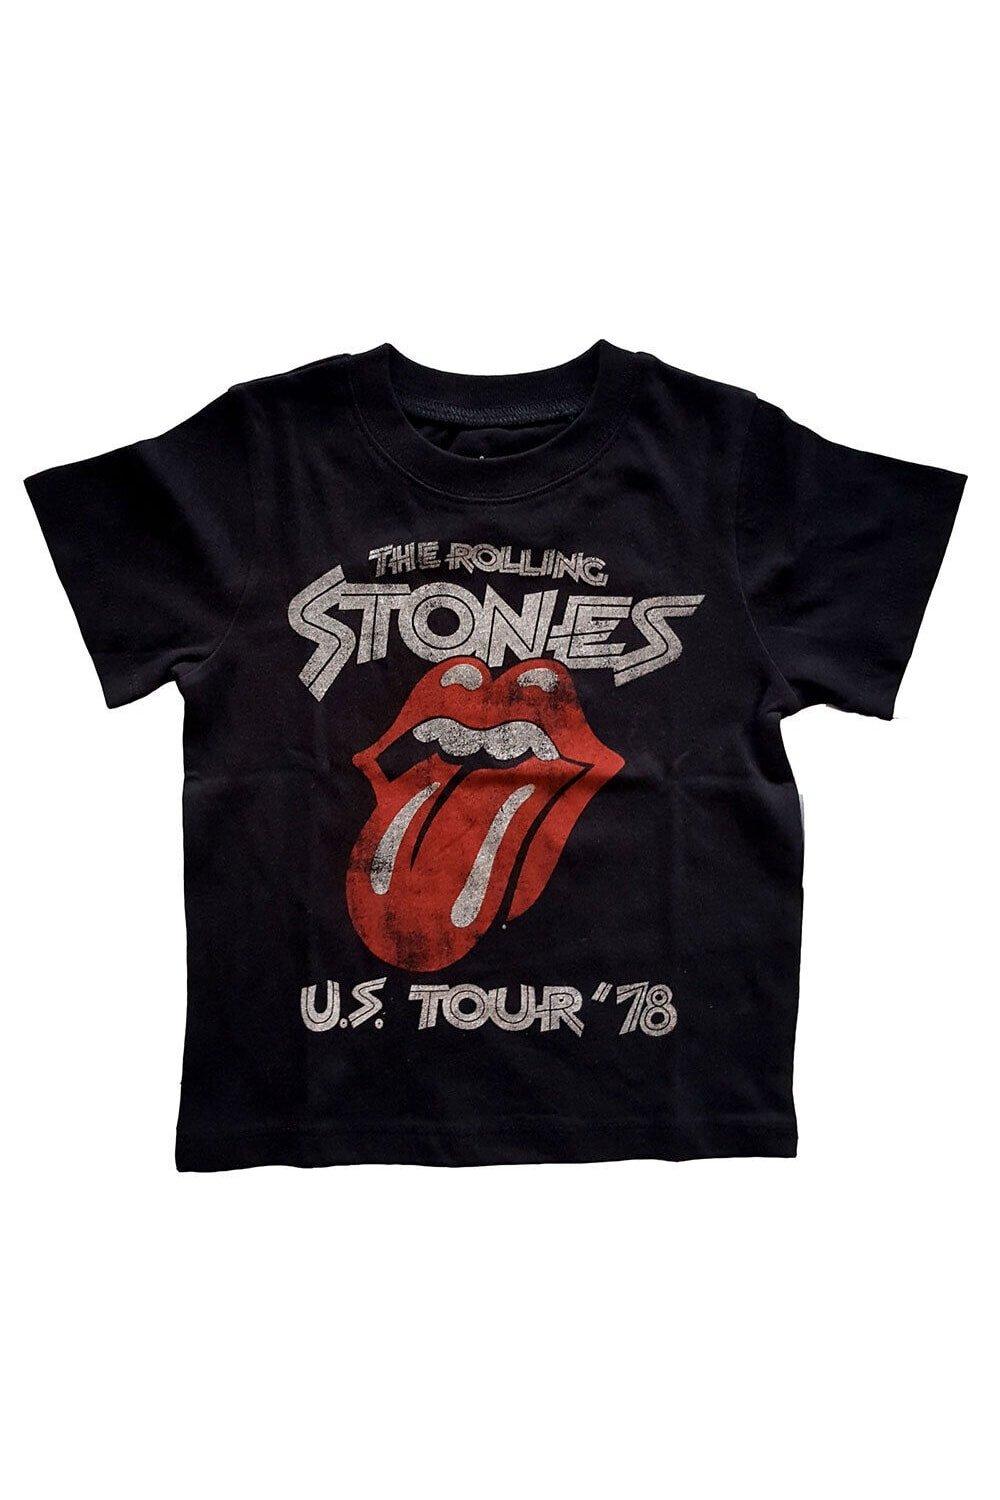 US Tour ’78 T-Shirt